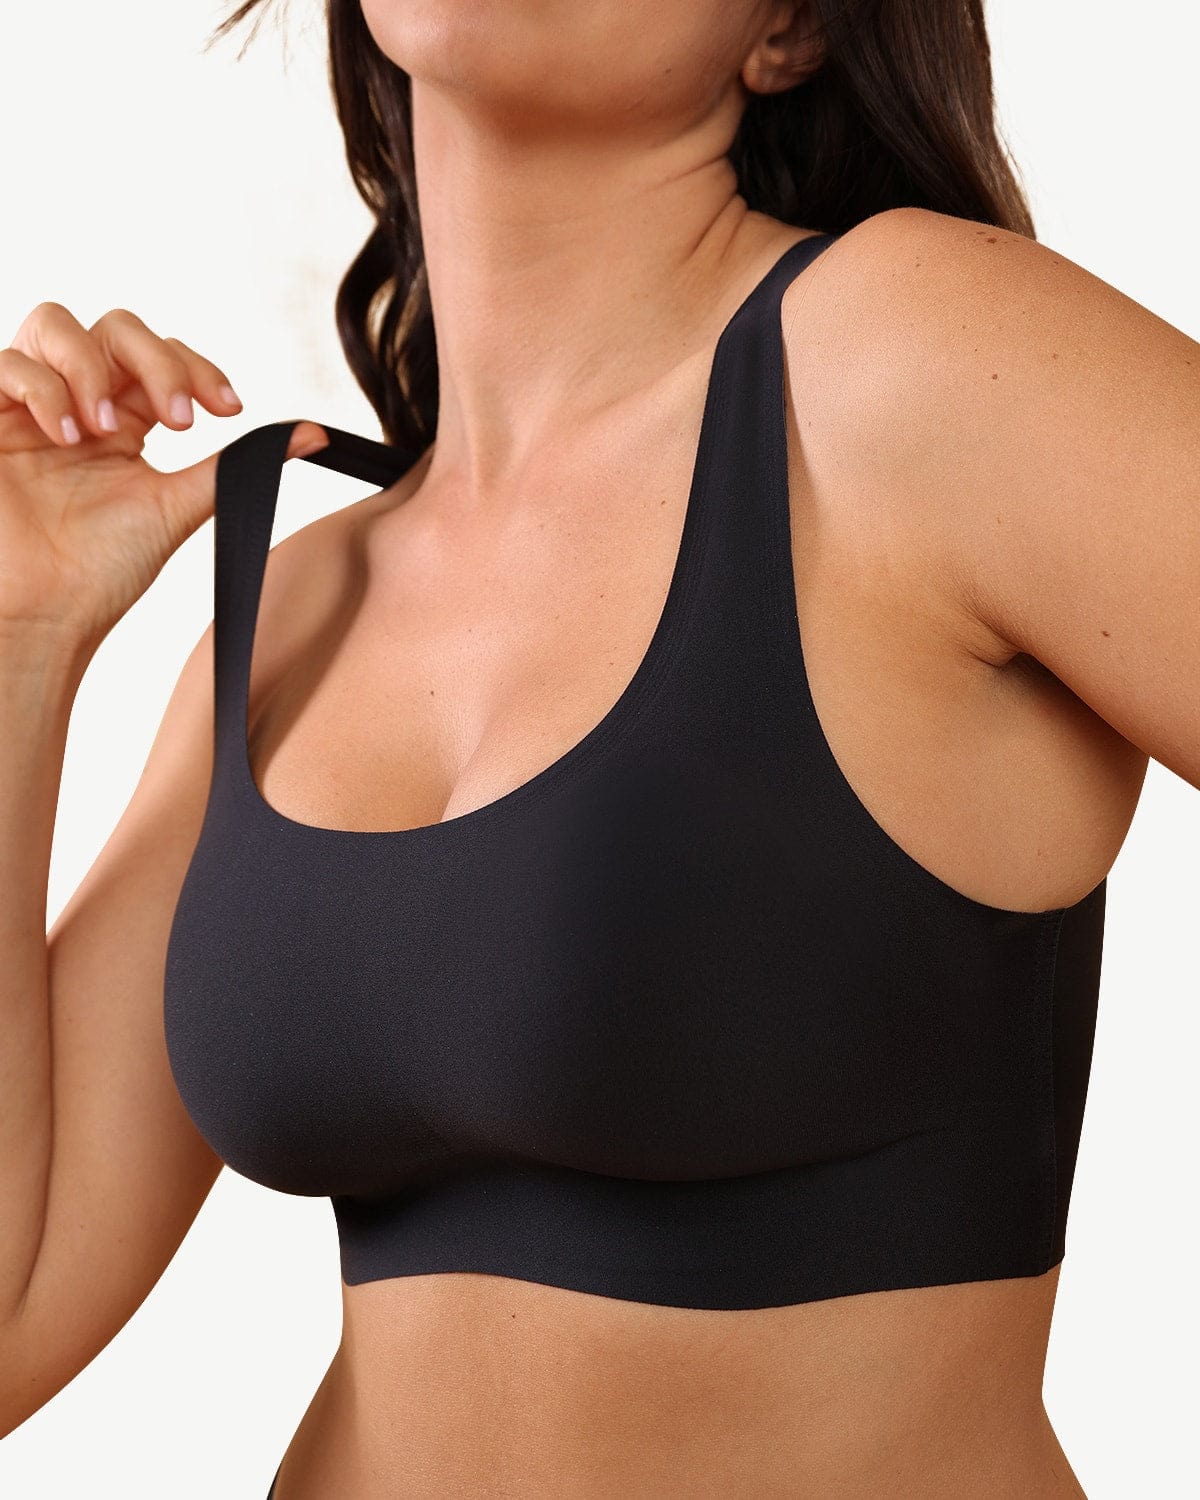 Women Bras Stretch Bra Set Seamless Wireless Bra Underwear Briefs